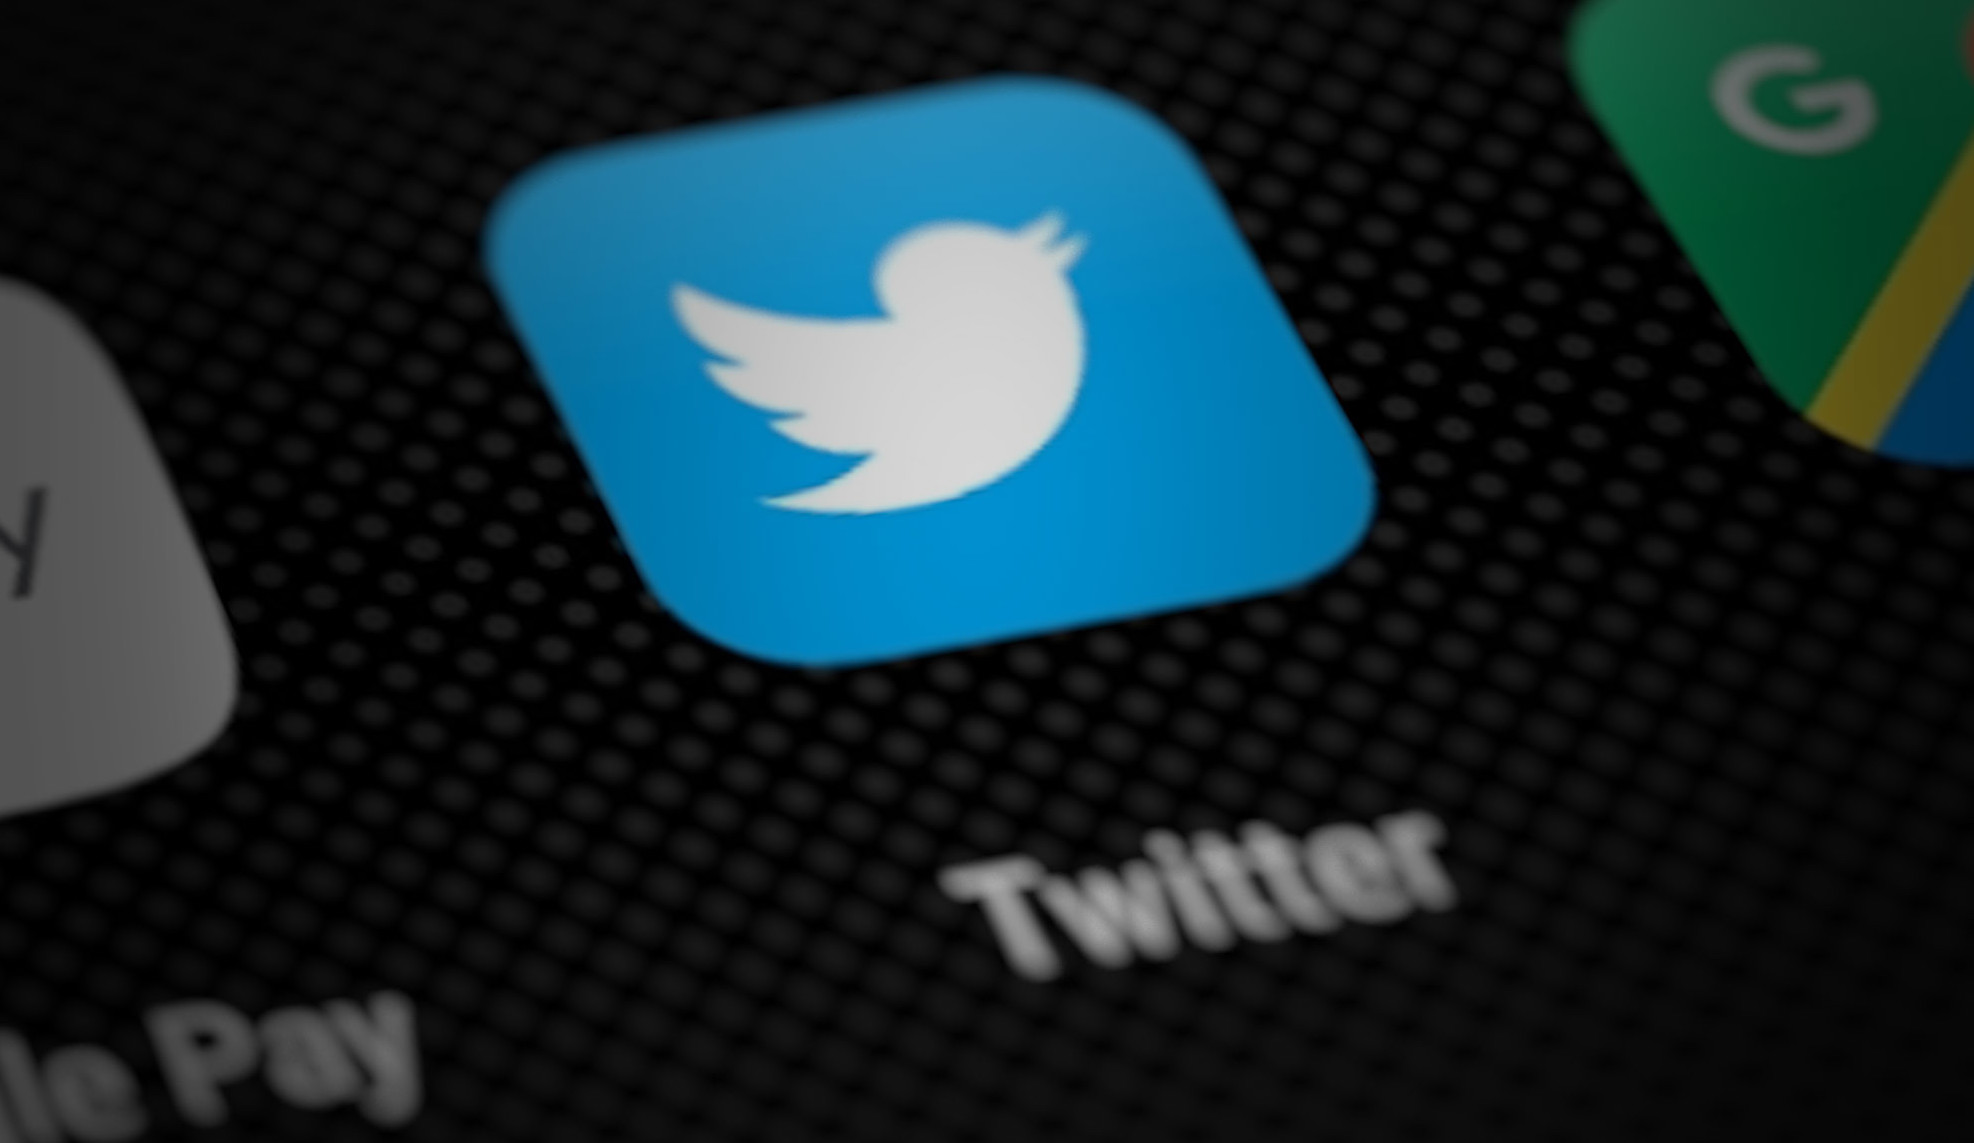 Twitter Allows Stock, Crypto Trading With eToro